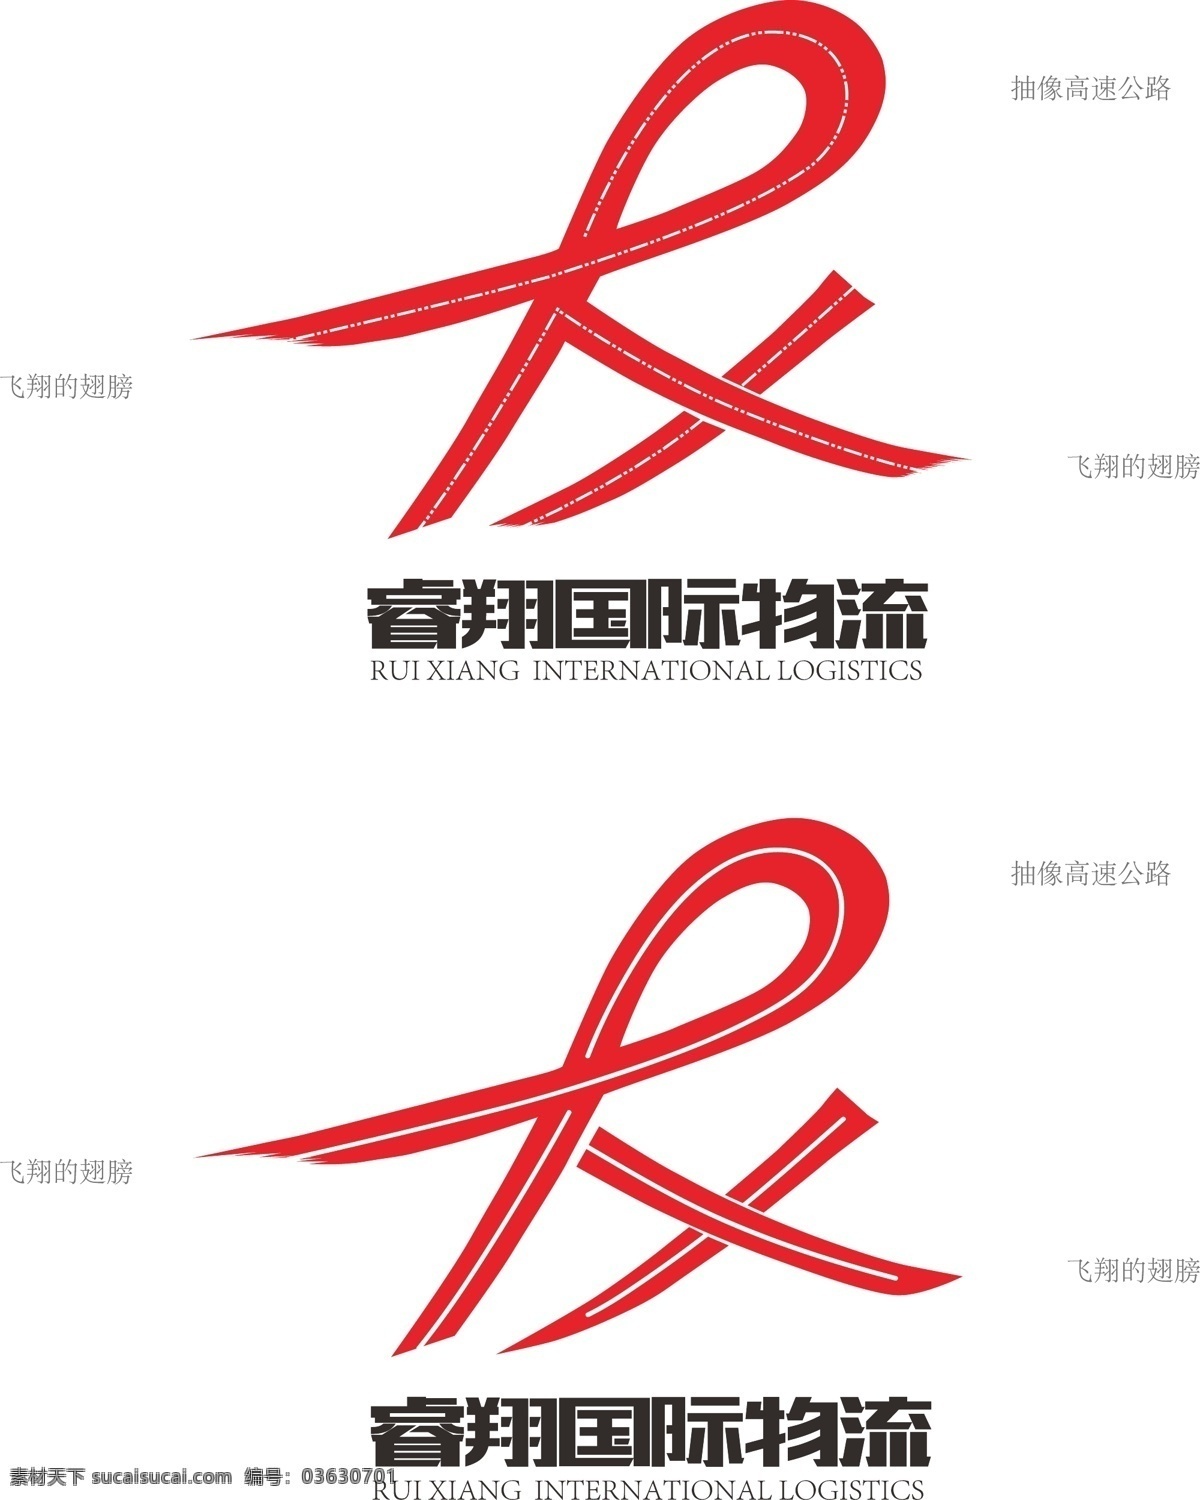 物流公司 logo 方案 logo设计 标识设计 企业商标 睿翔国际物流 睿翔标识 国际物流标识 抽象高速公路 抽像翅膀 抽象英文字母 矢量图